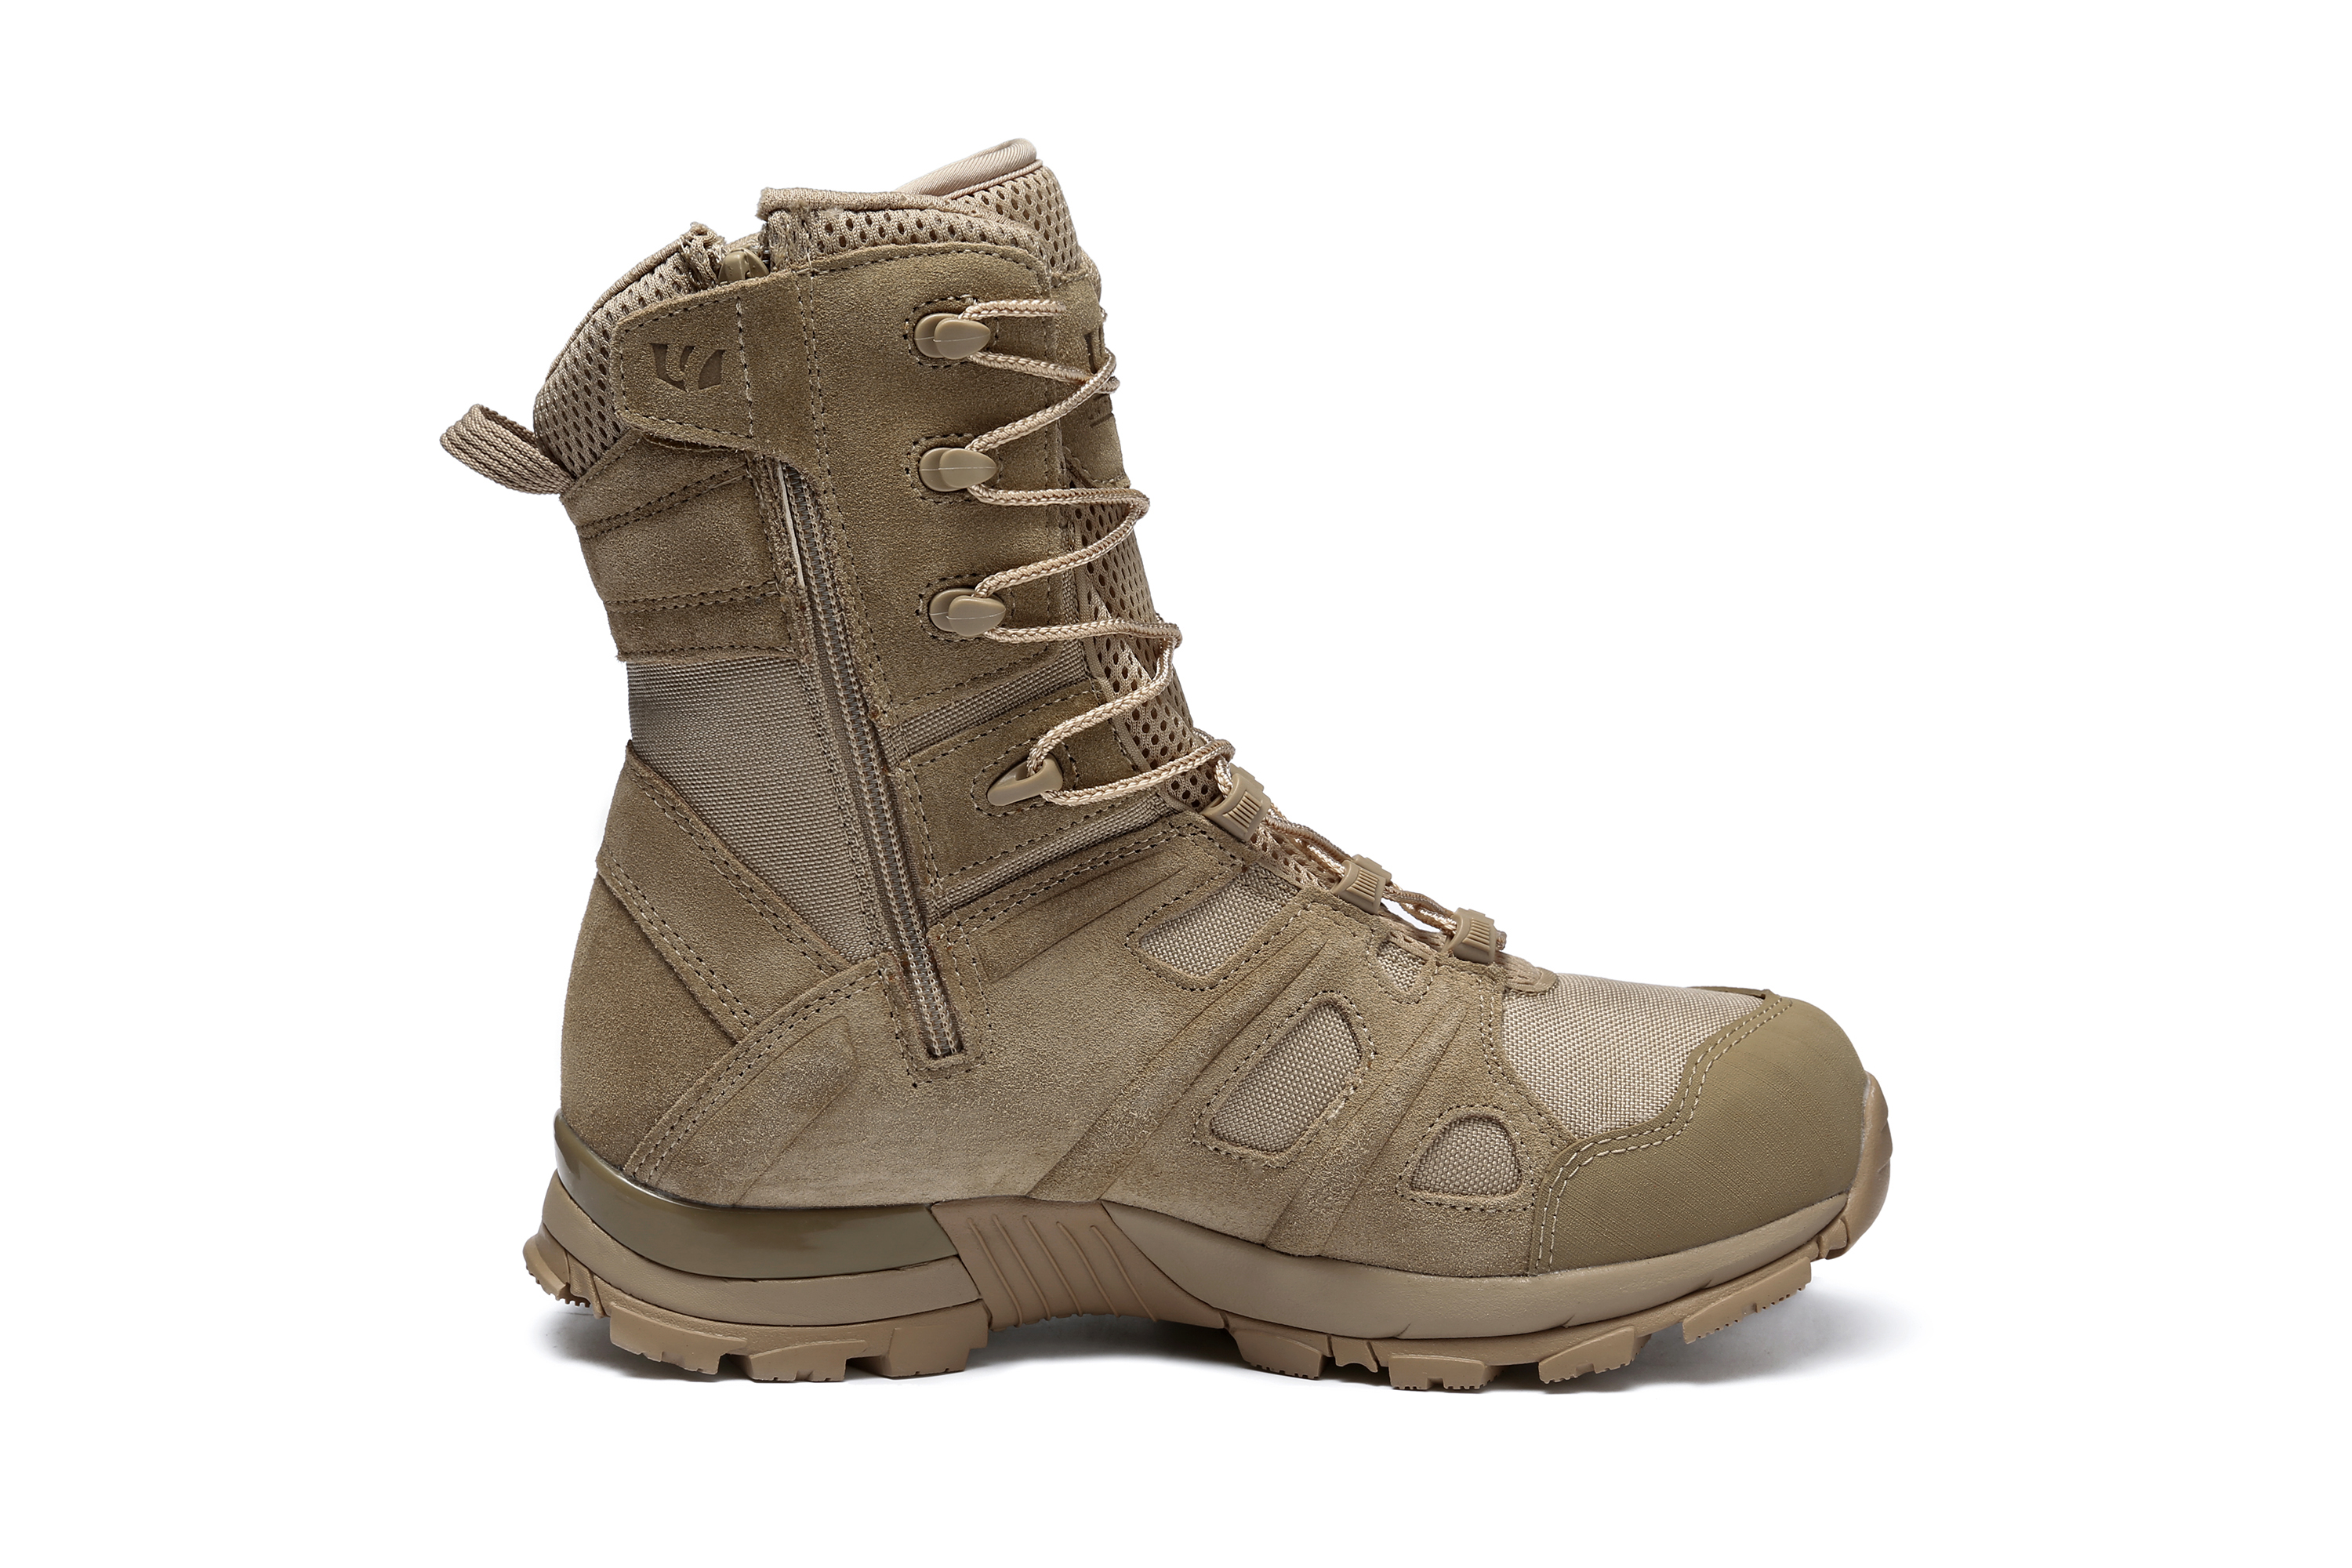 Desert Tactical boots 